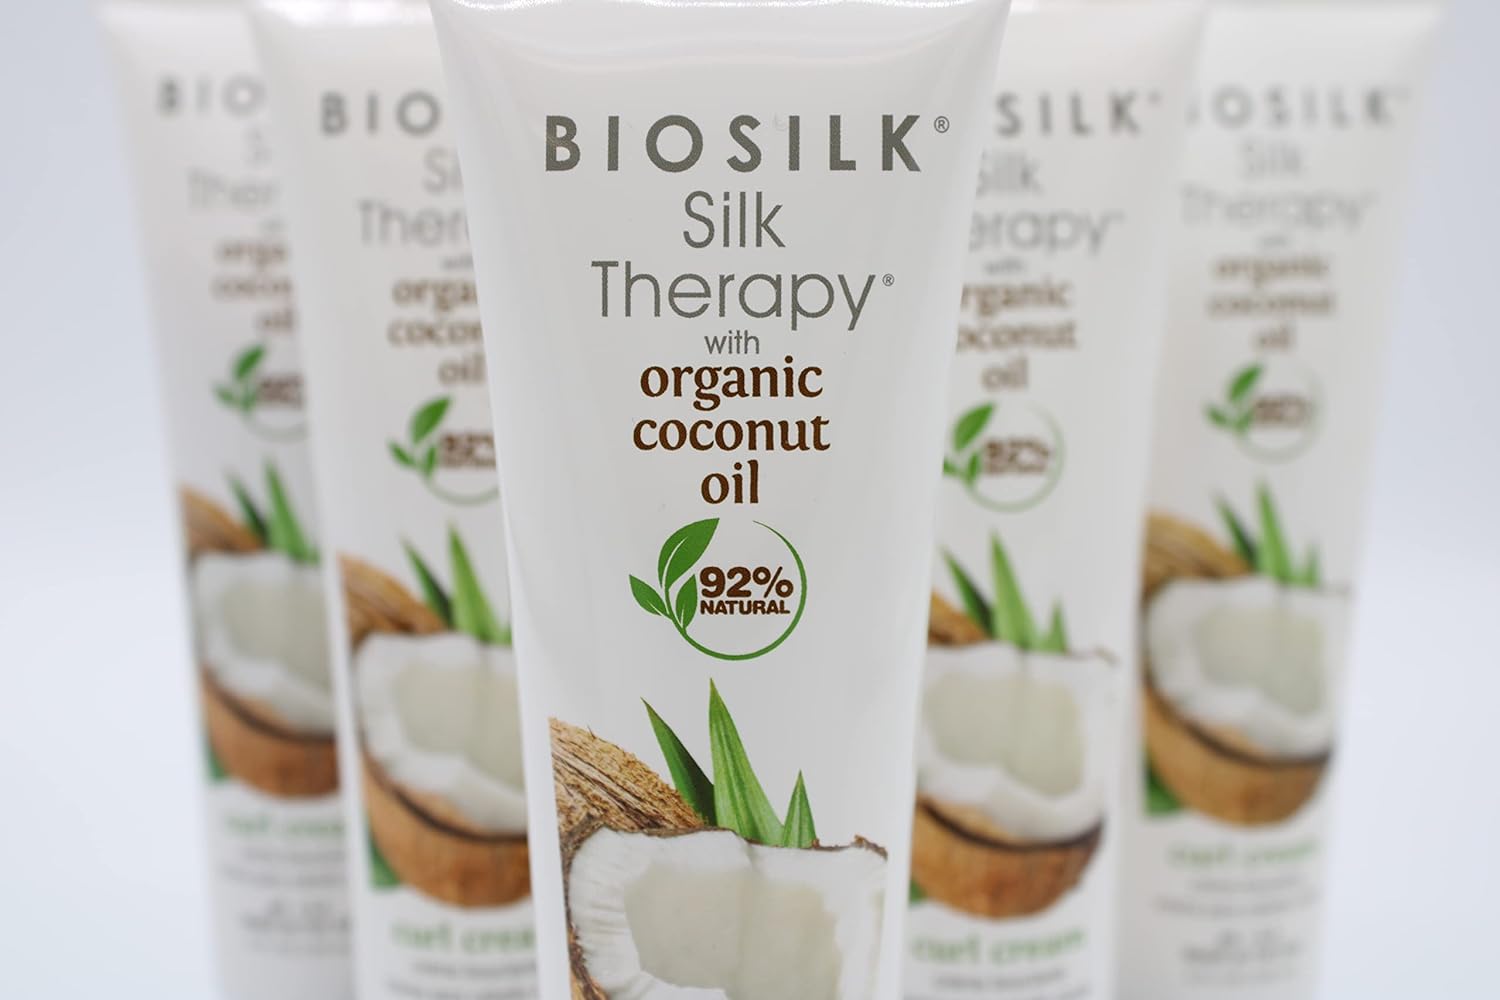 Biosilk Silk Therapy with Organic Coconut Oil Curl Cream Unisex Cream 5 oz : Beauty & Personal Care